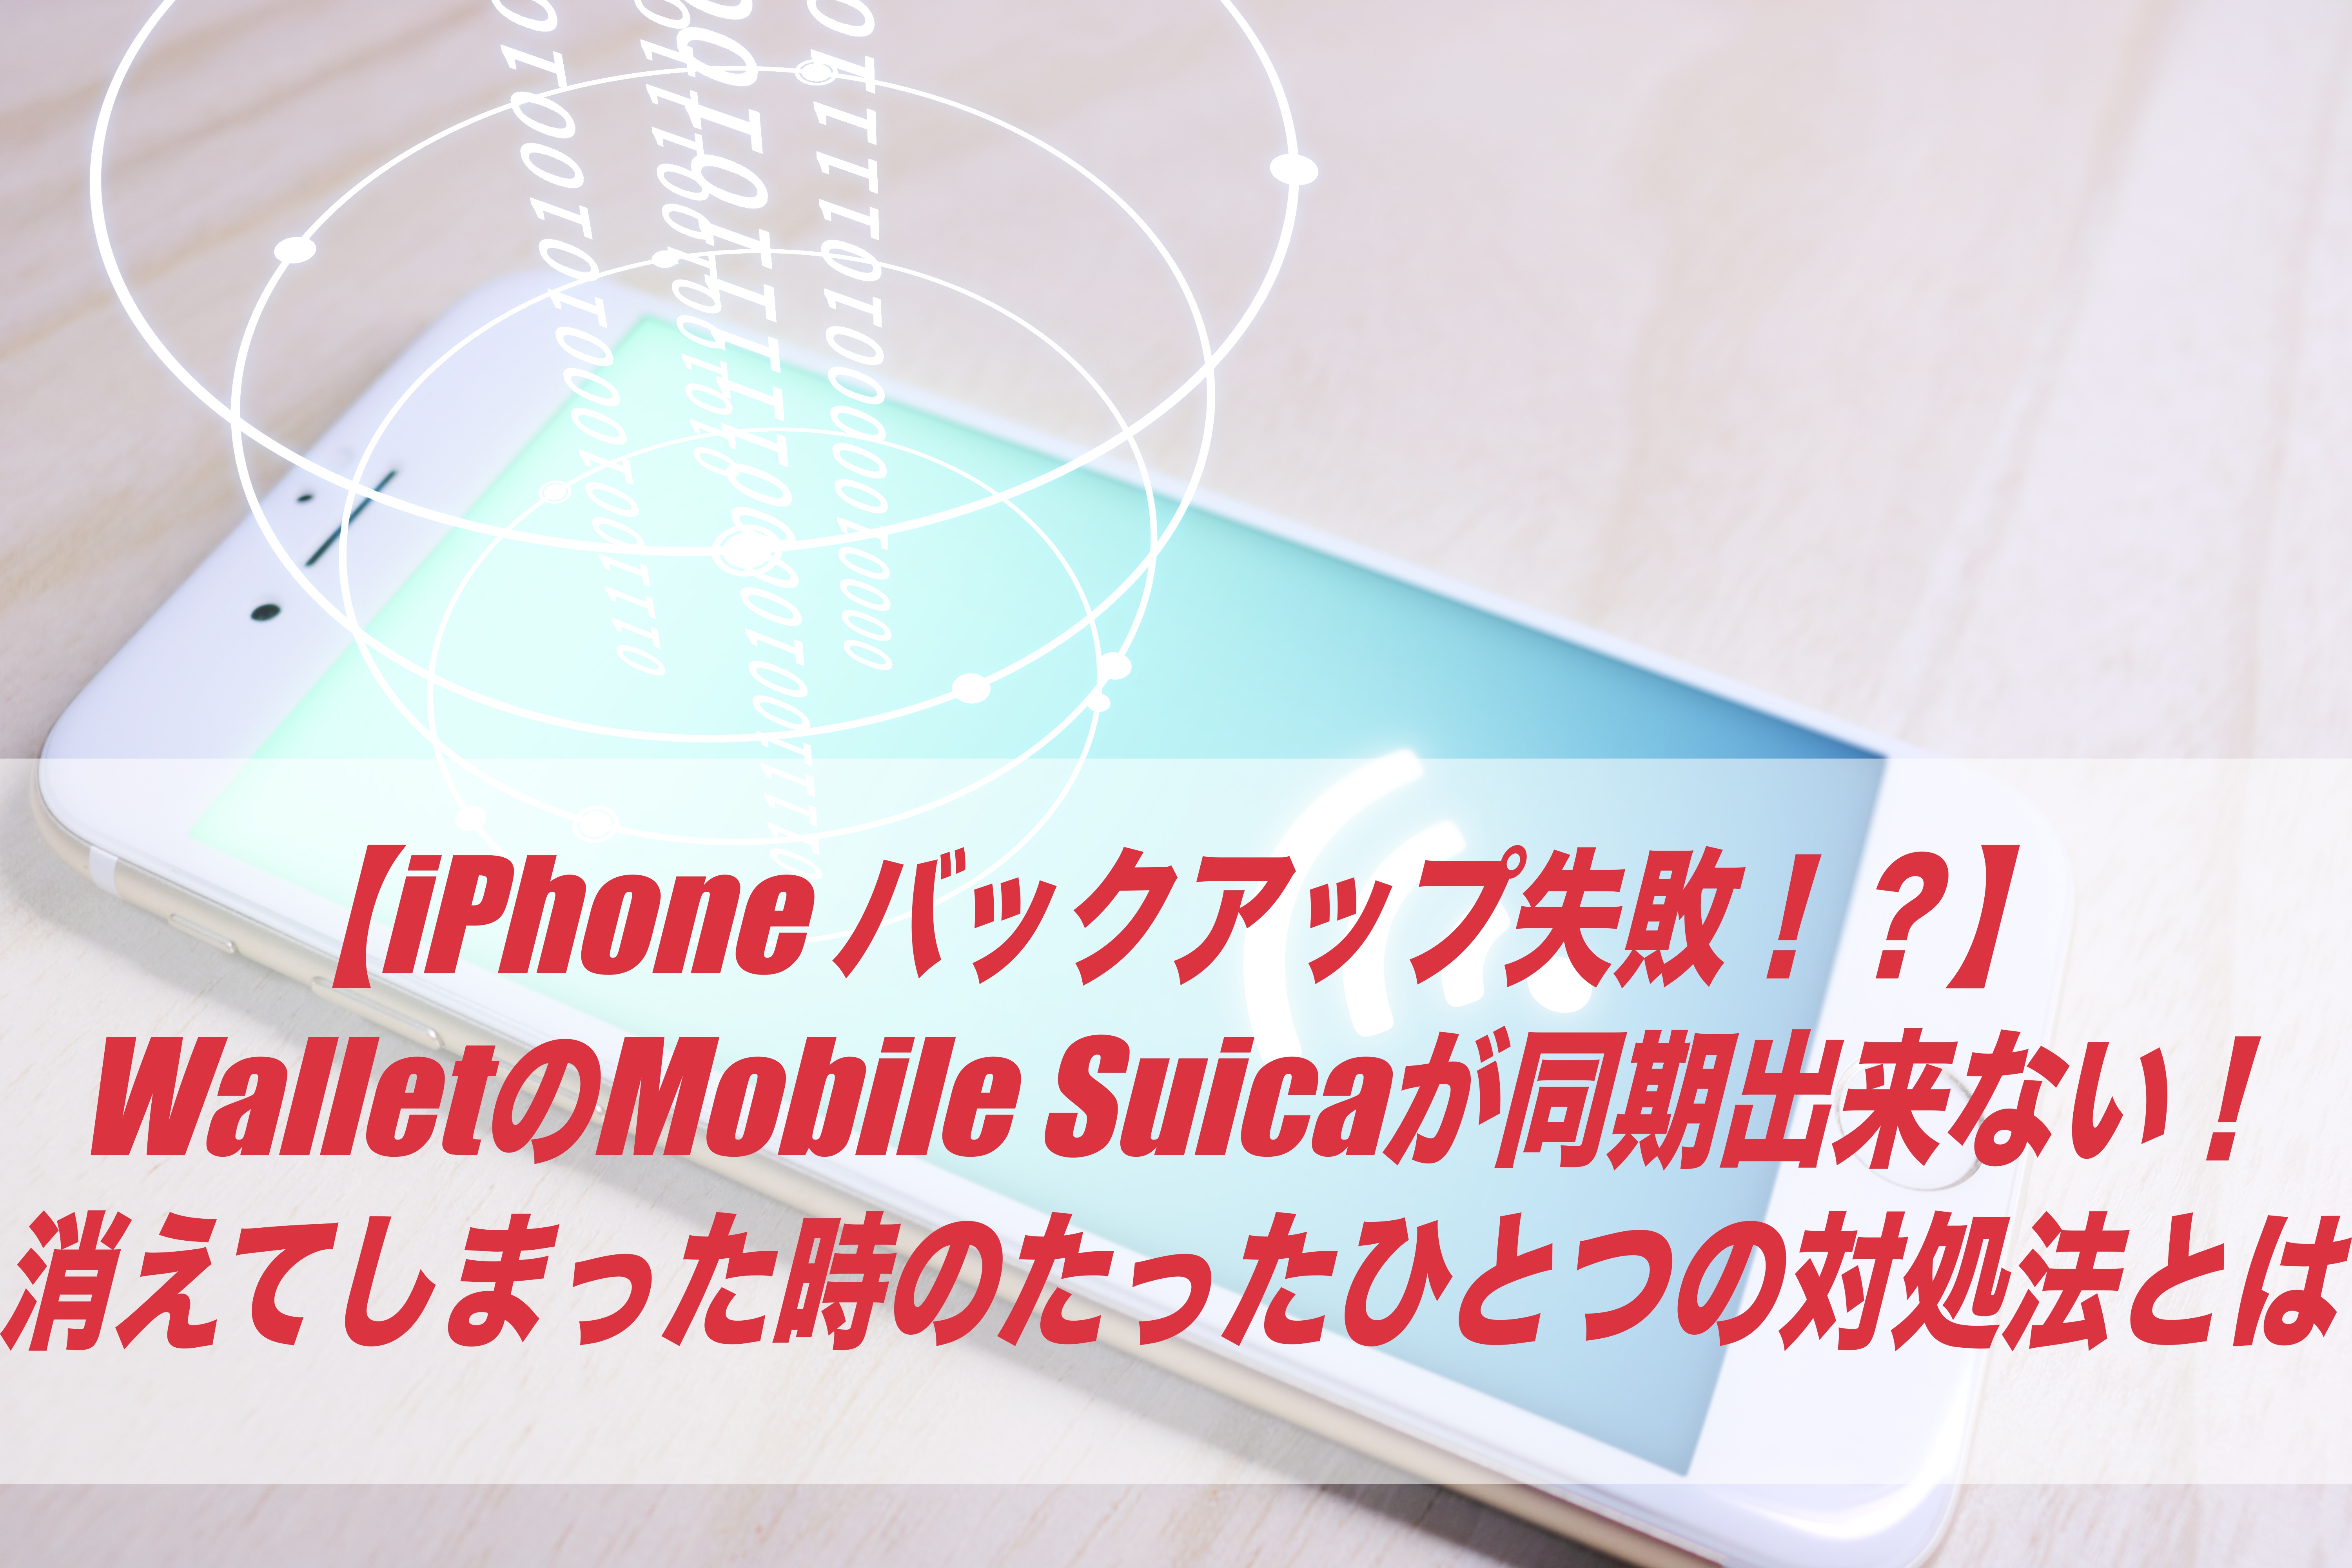 Iphone バックアップ失敗 Mobile Suica機種変更で消えてしまった時のたったひとつの対処法とは モバイルスイカ しょーとかっとブログ